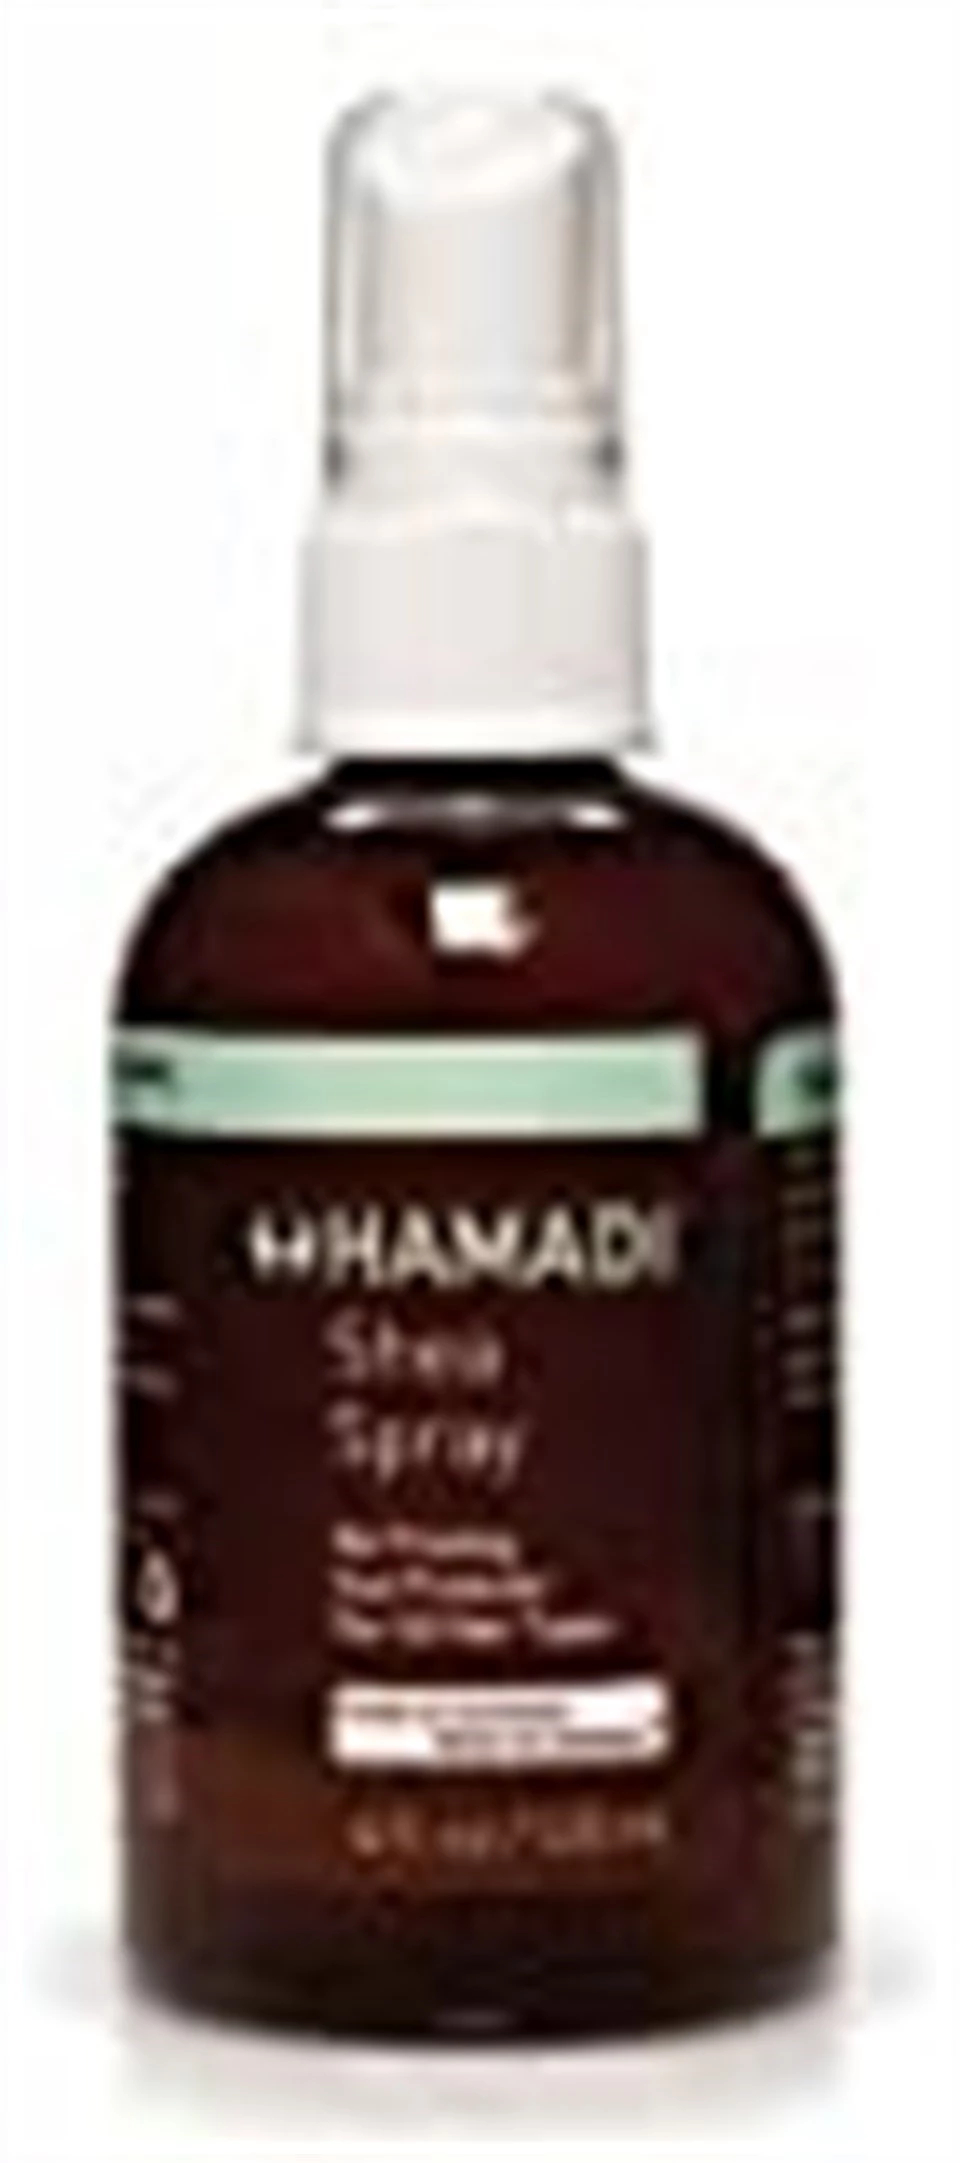 Hamadi SHea Sprey 120 ml